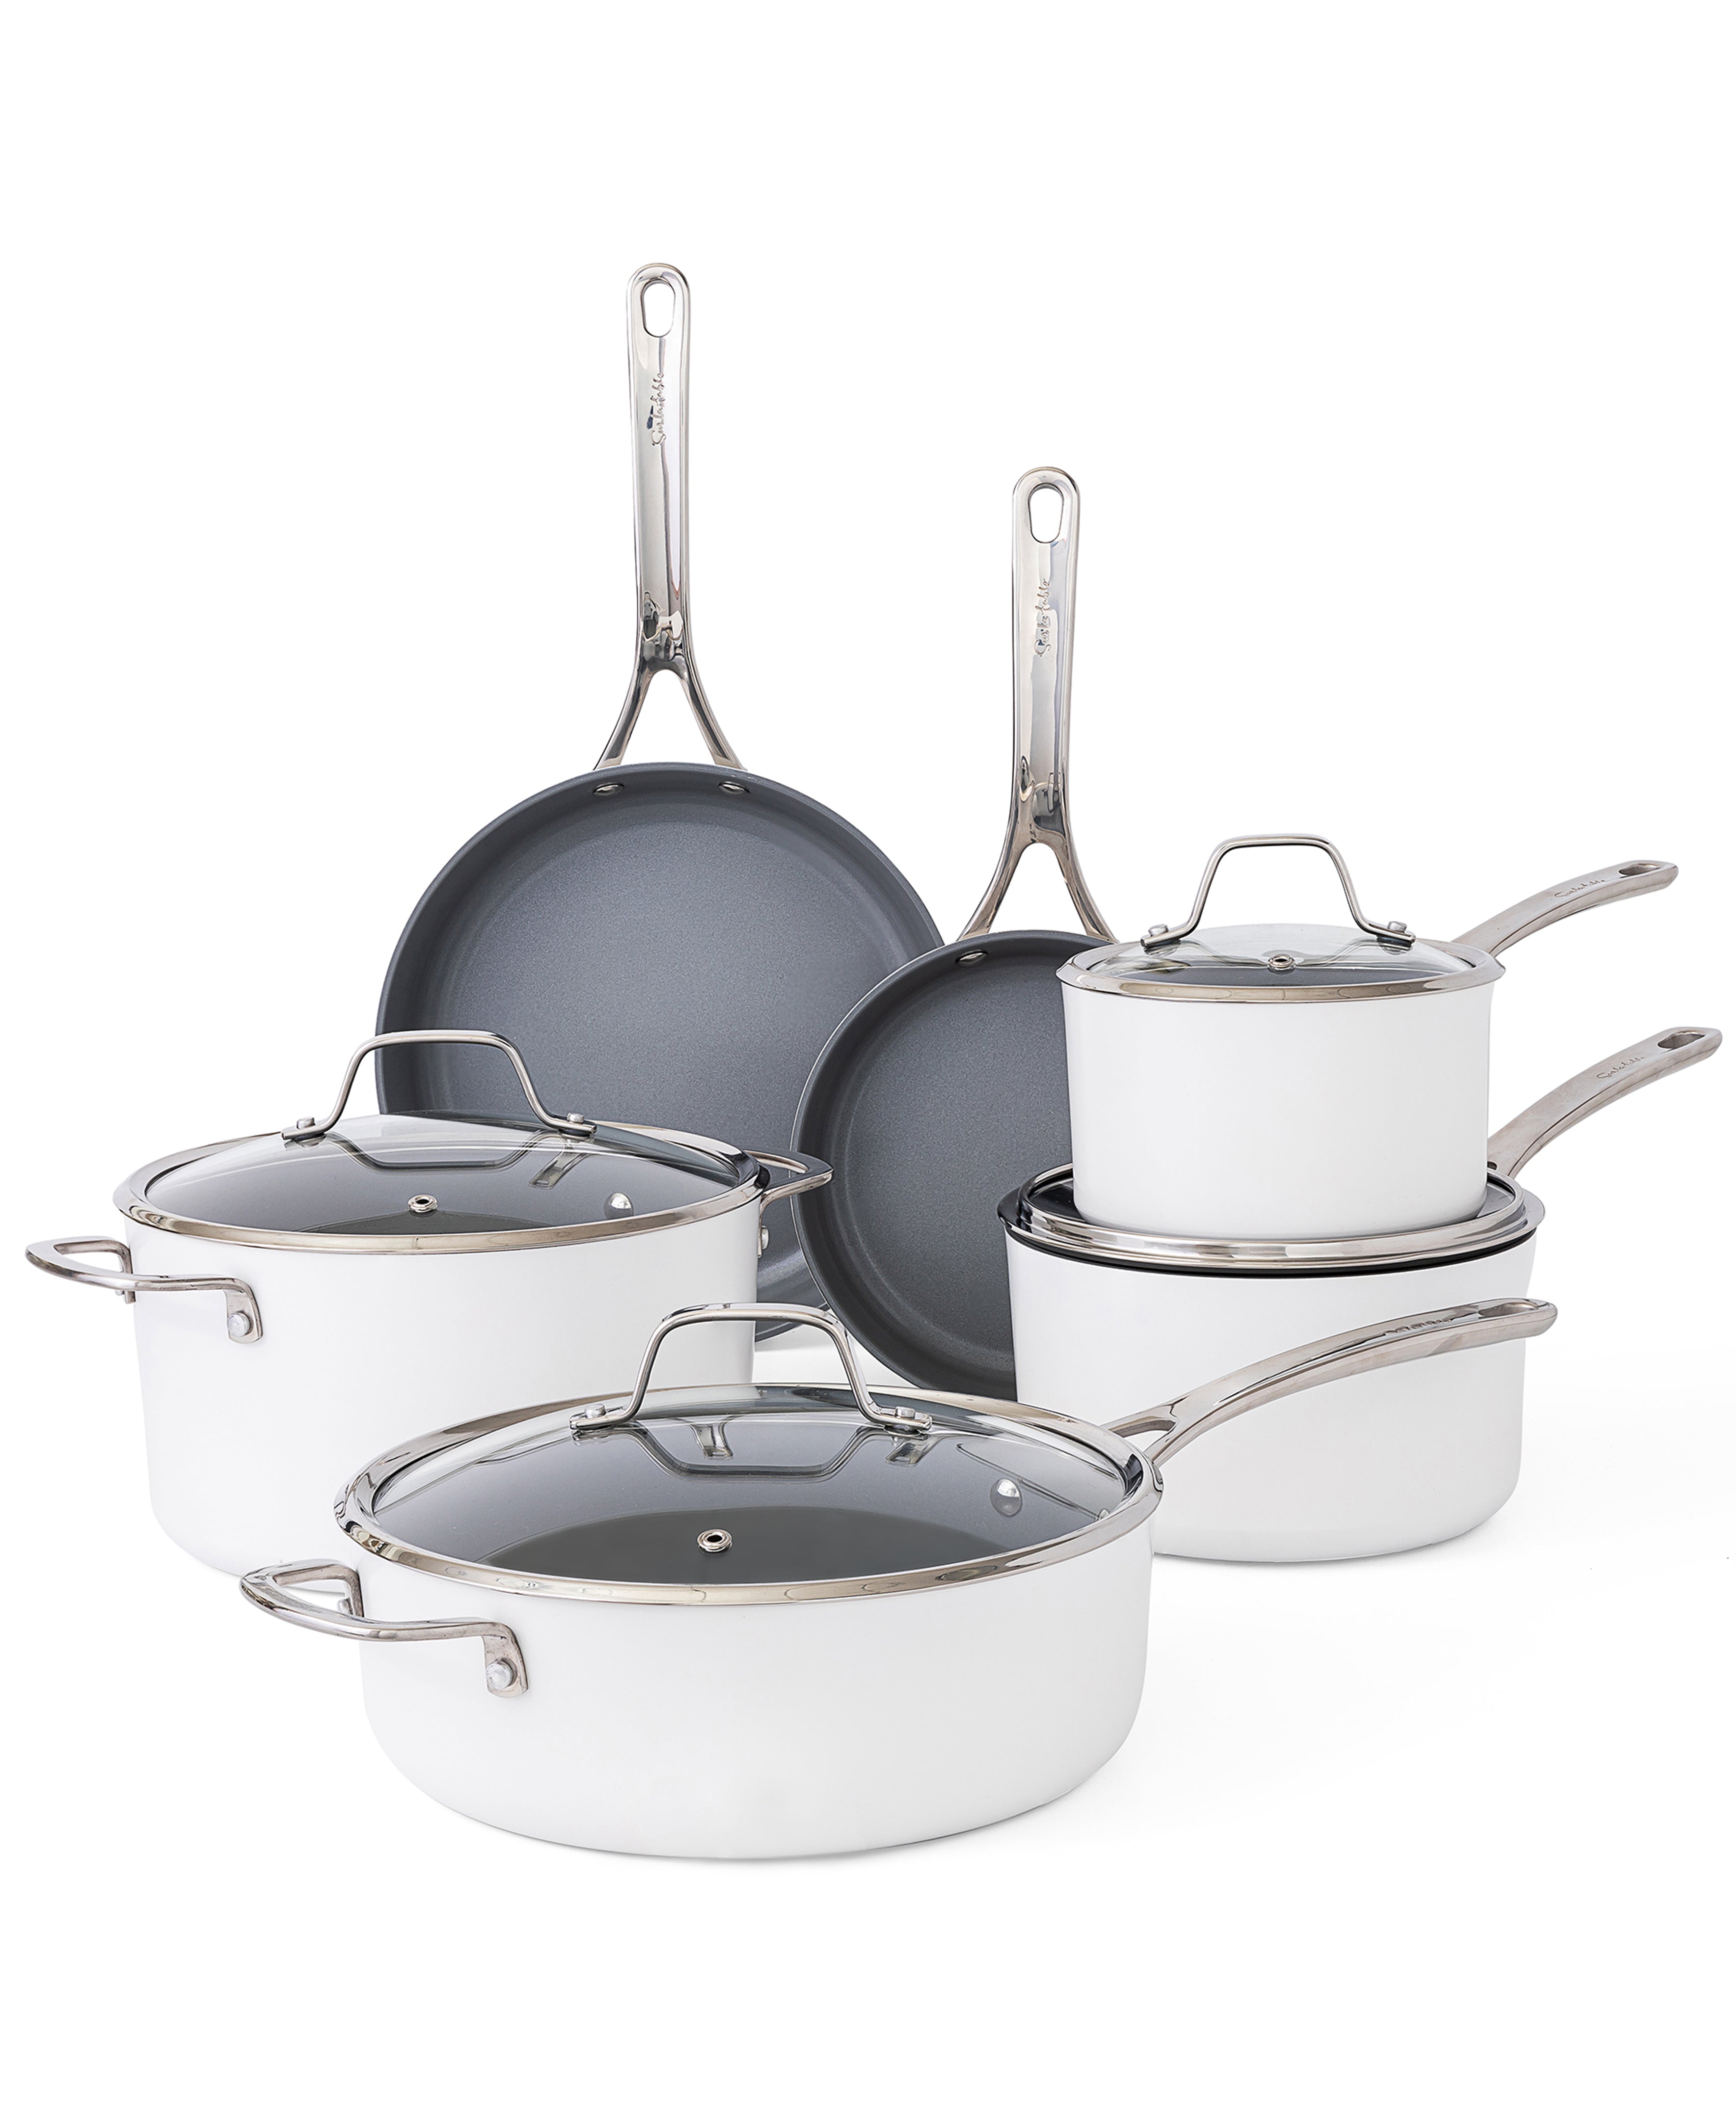 What is Premium Nonstick PFA-Free Ceramic-Interior Gauge Enamel Aluminum  Pots and Pans Cookware Set